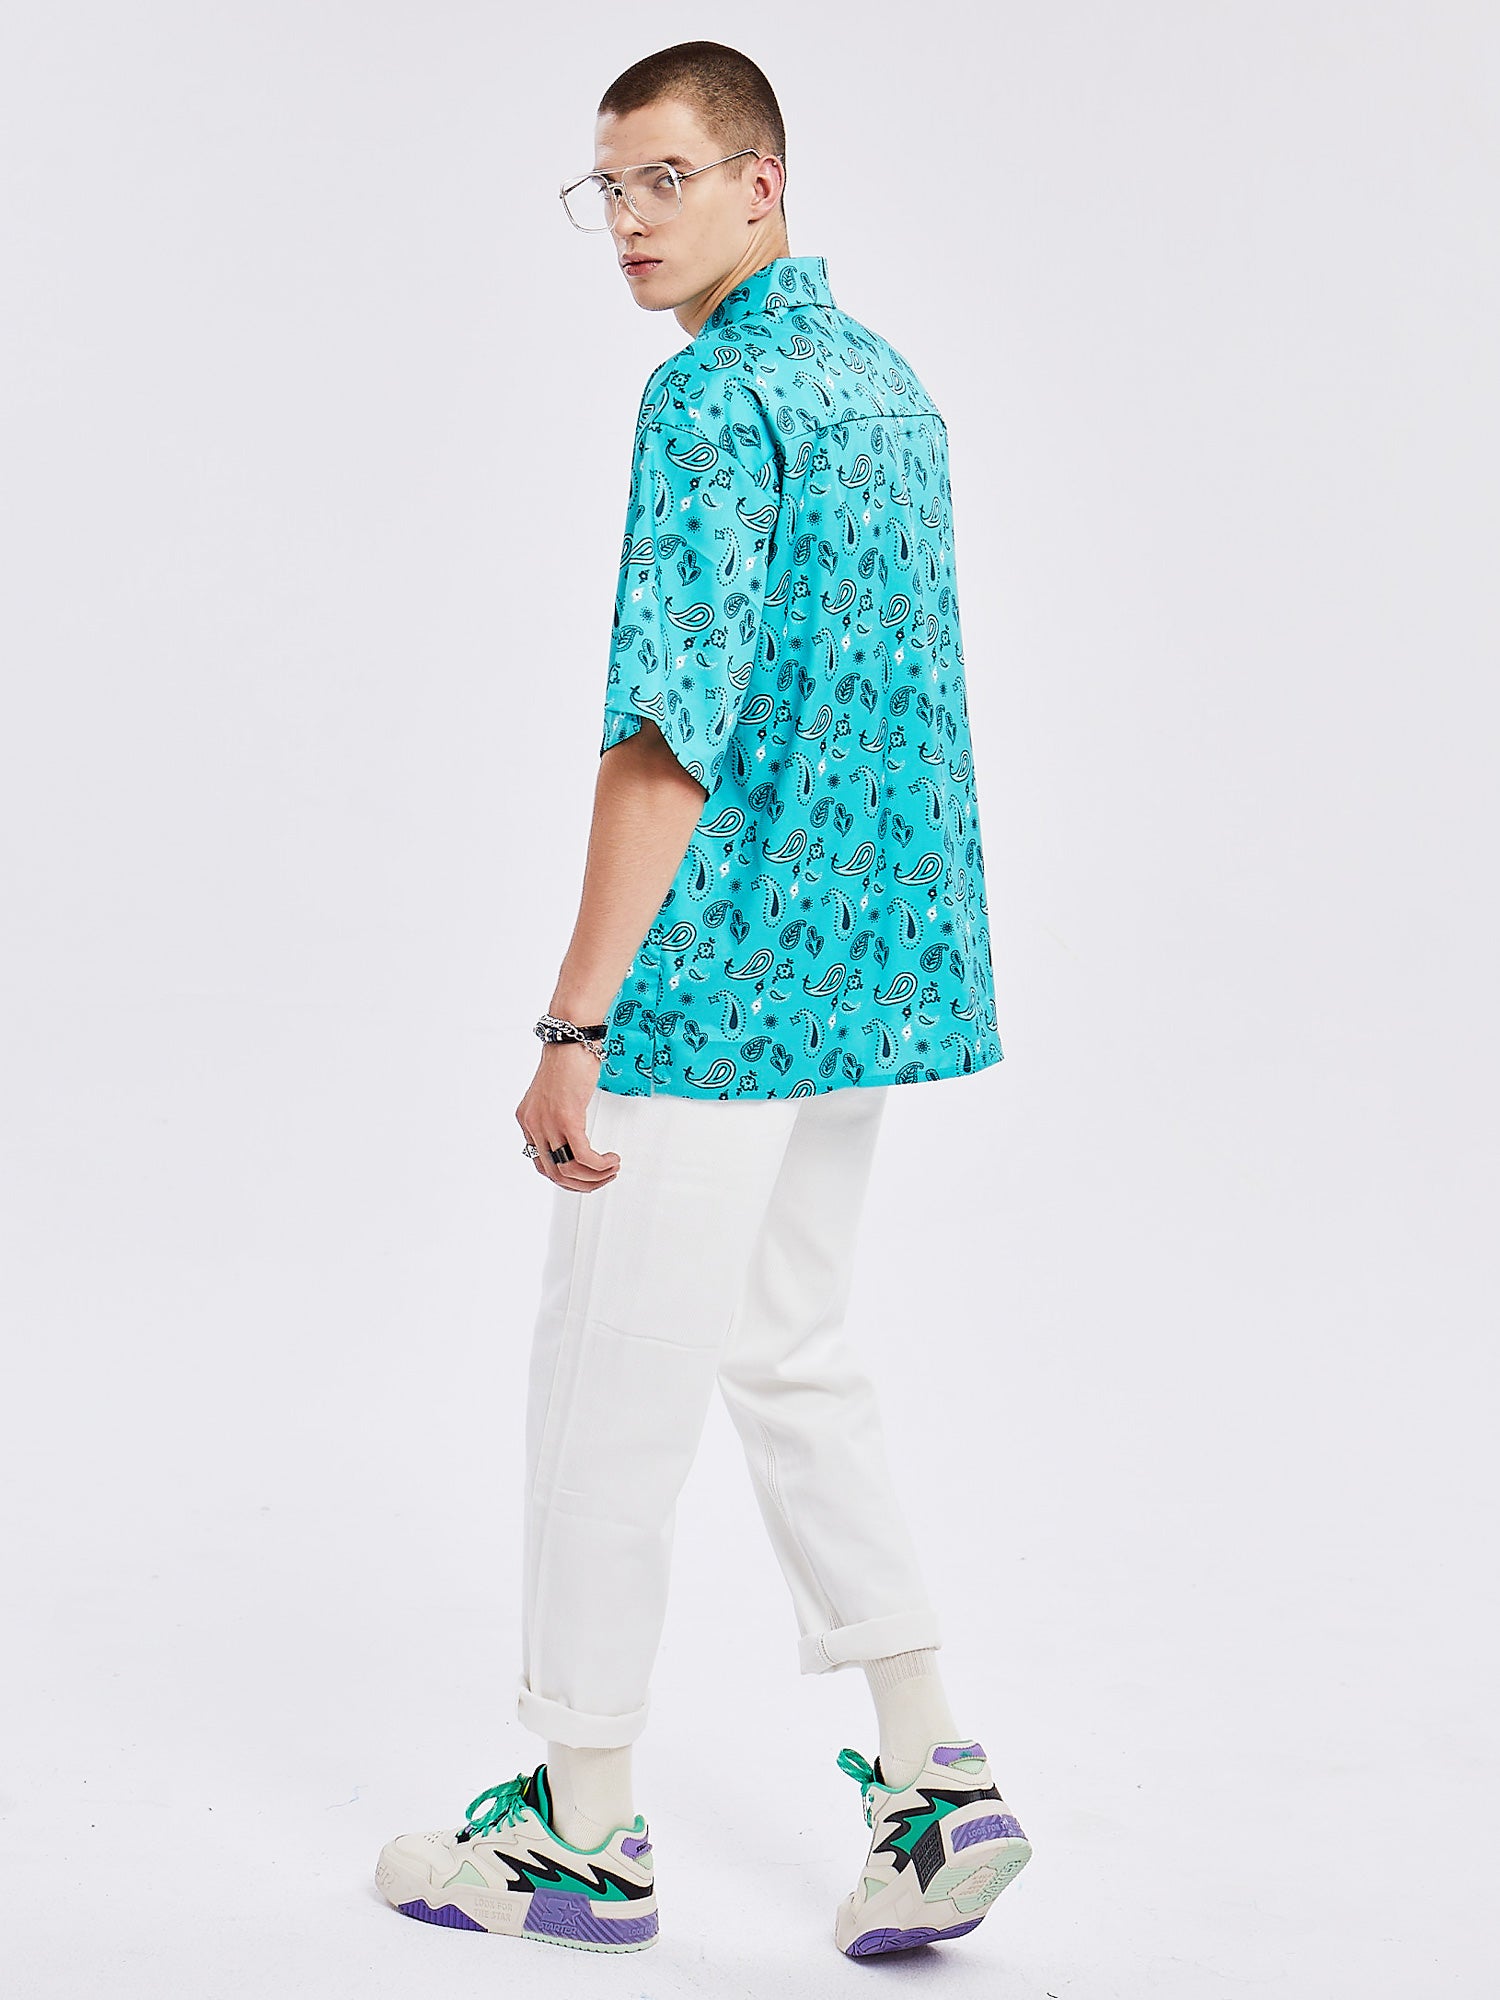 JUSTNOTAG Hemden aus Polyester mit Blumendruck und Umlegekragen